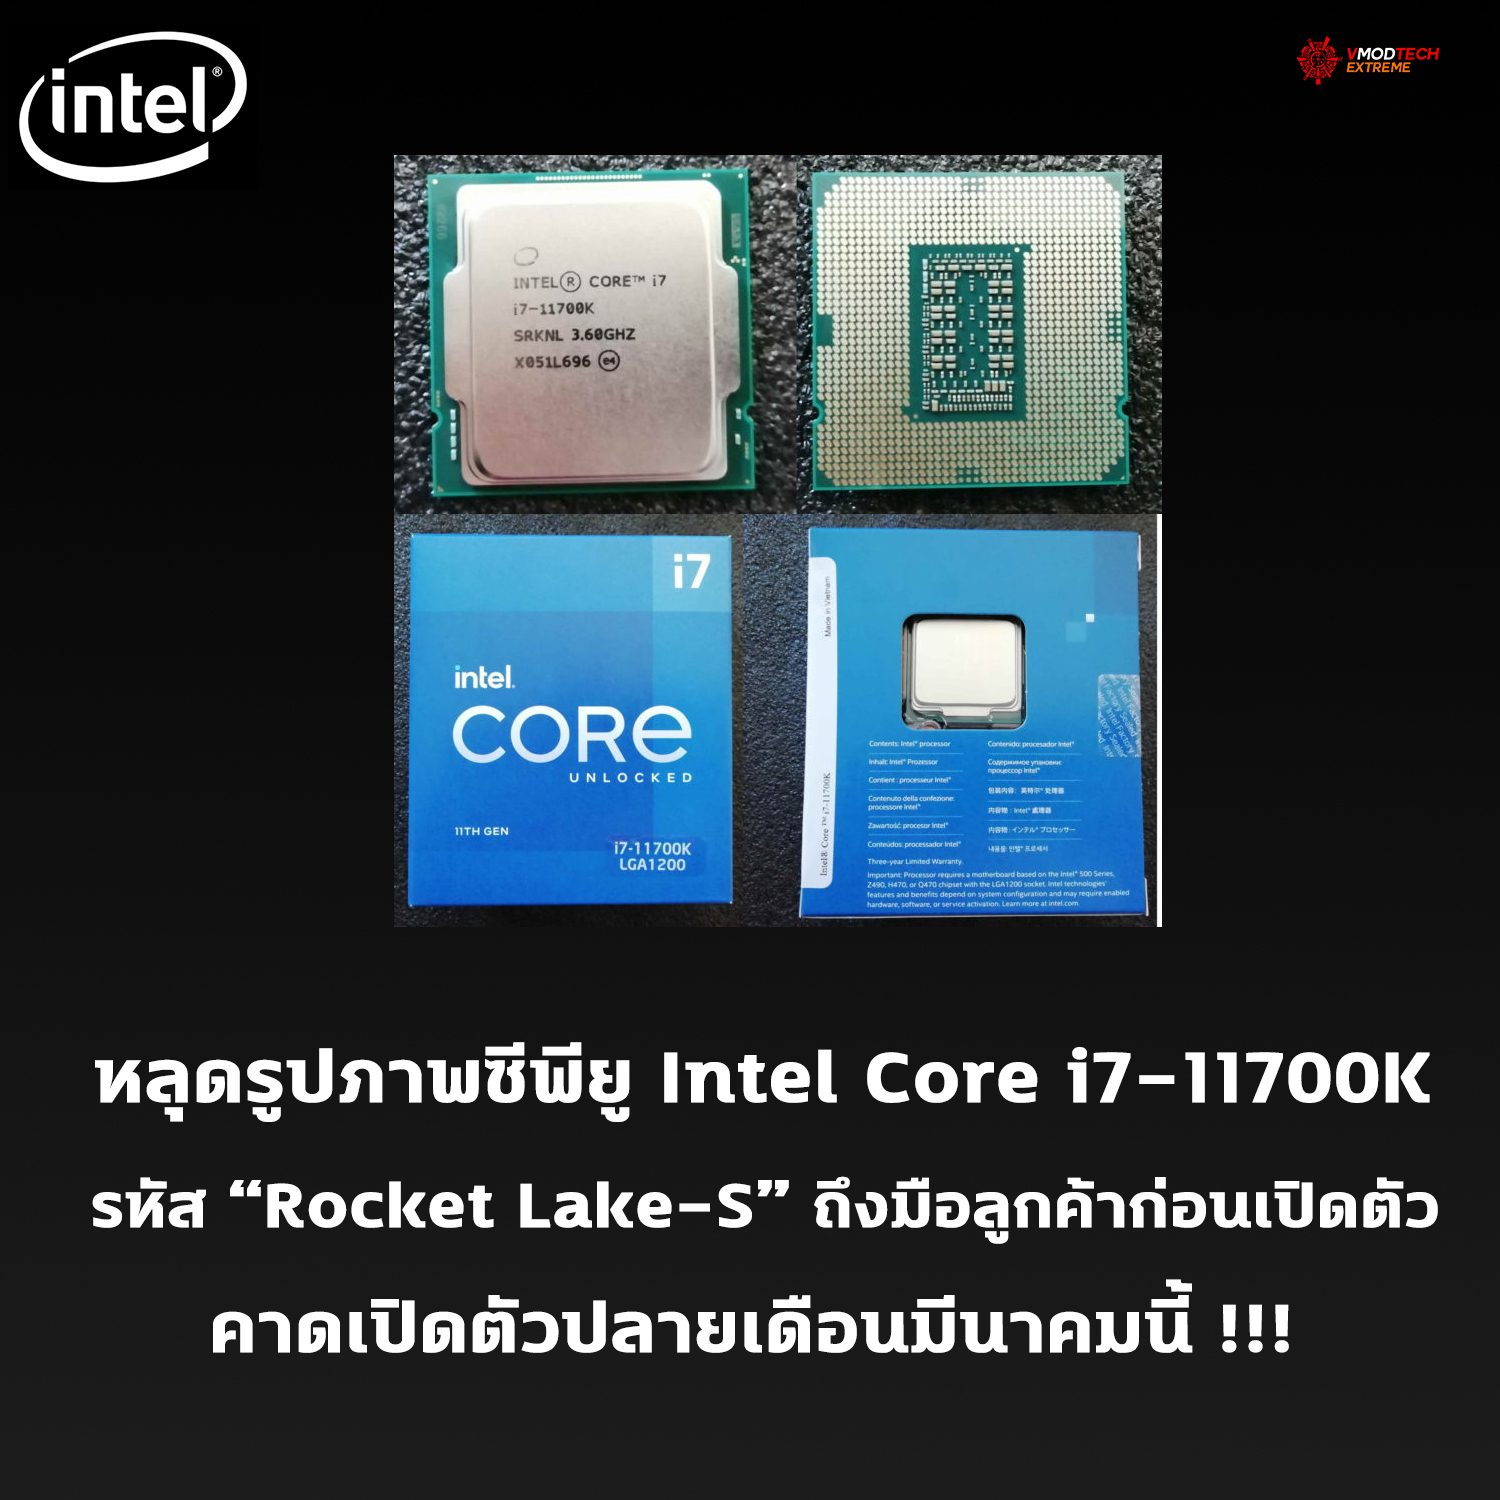 ซีพียู Intel Core i7-11700K รหัส “Rocket Lake-S” ถึงมือลูกค้าแล้วก่อนเปิดตัว พร้อมหลุดผลทดสอบอย่างไม่เป็นทางการ 